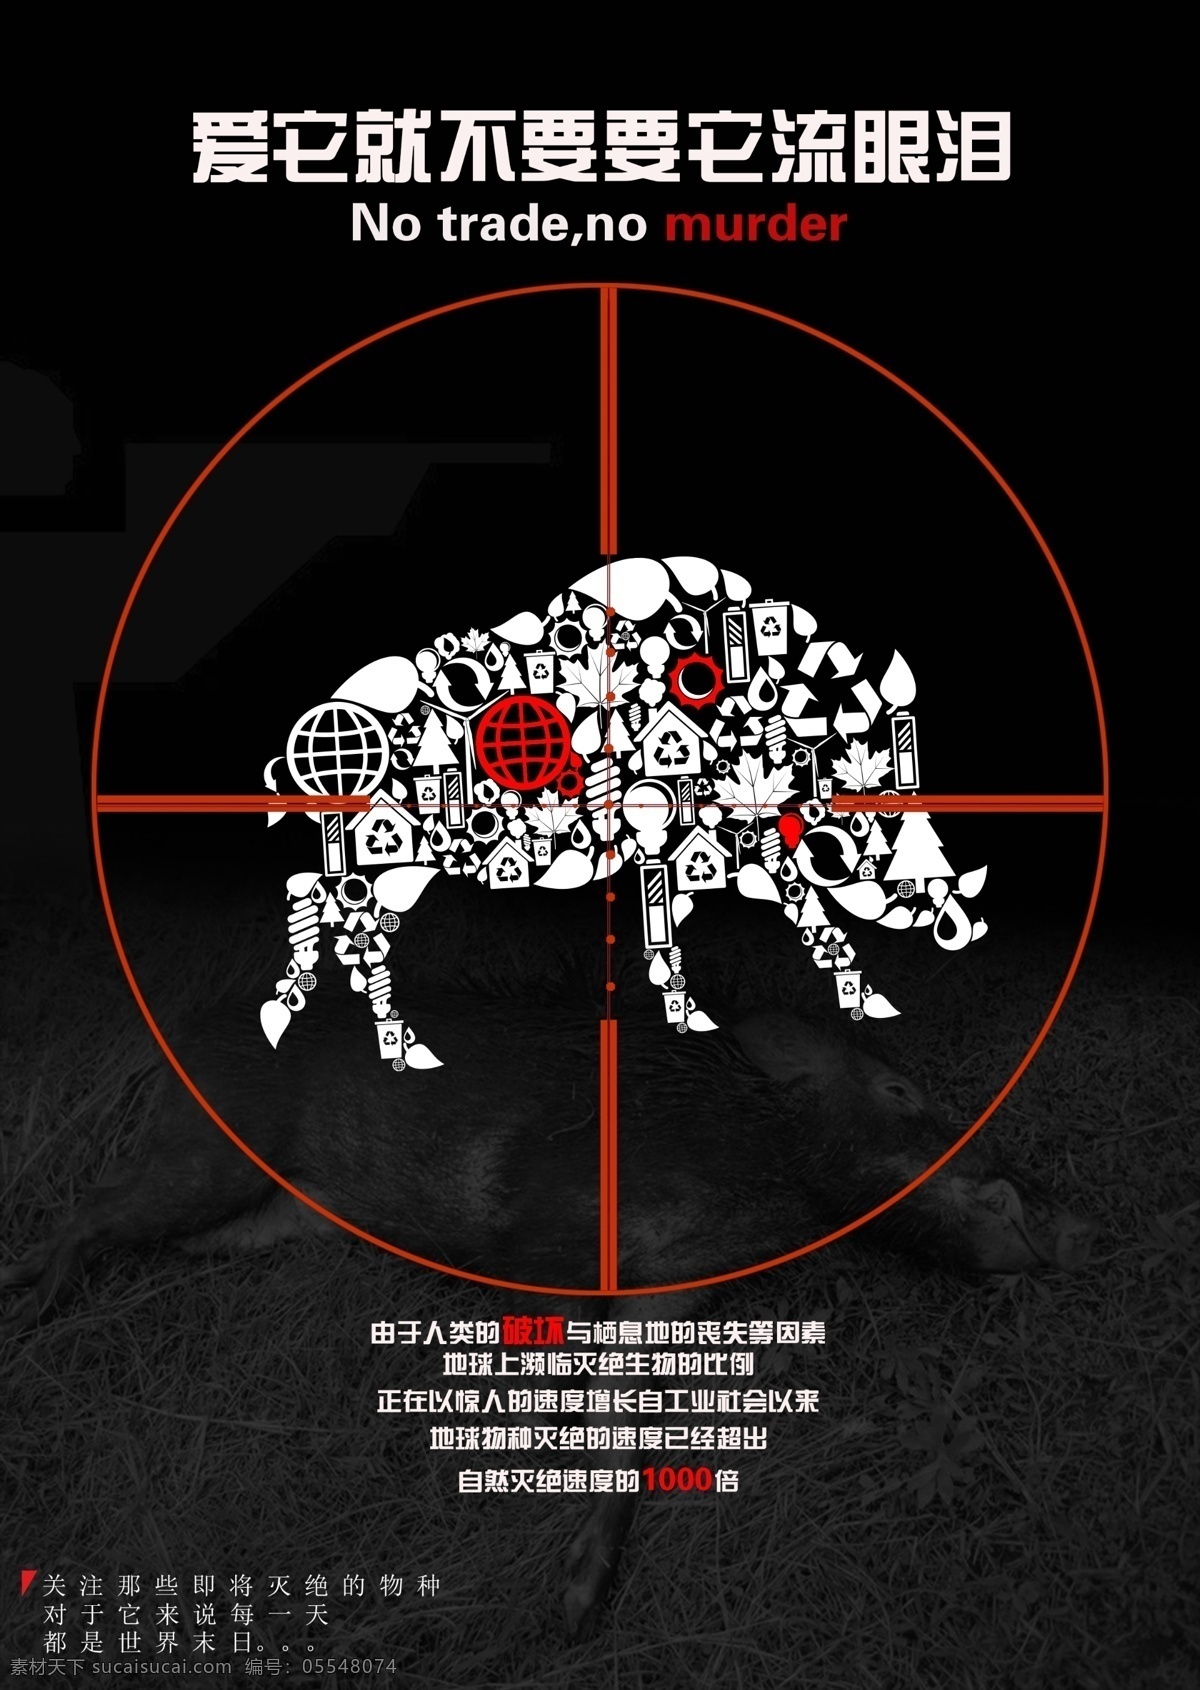 公益海报 犀牛 保护 眼泪 海报 公益 保护动物 狙击 黑色 剪影